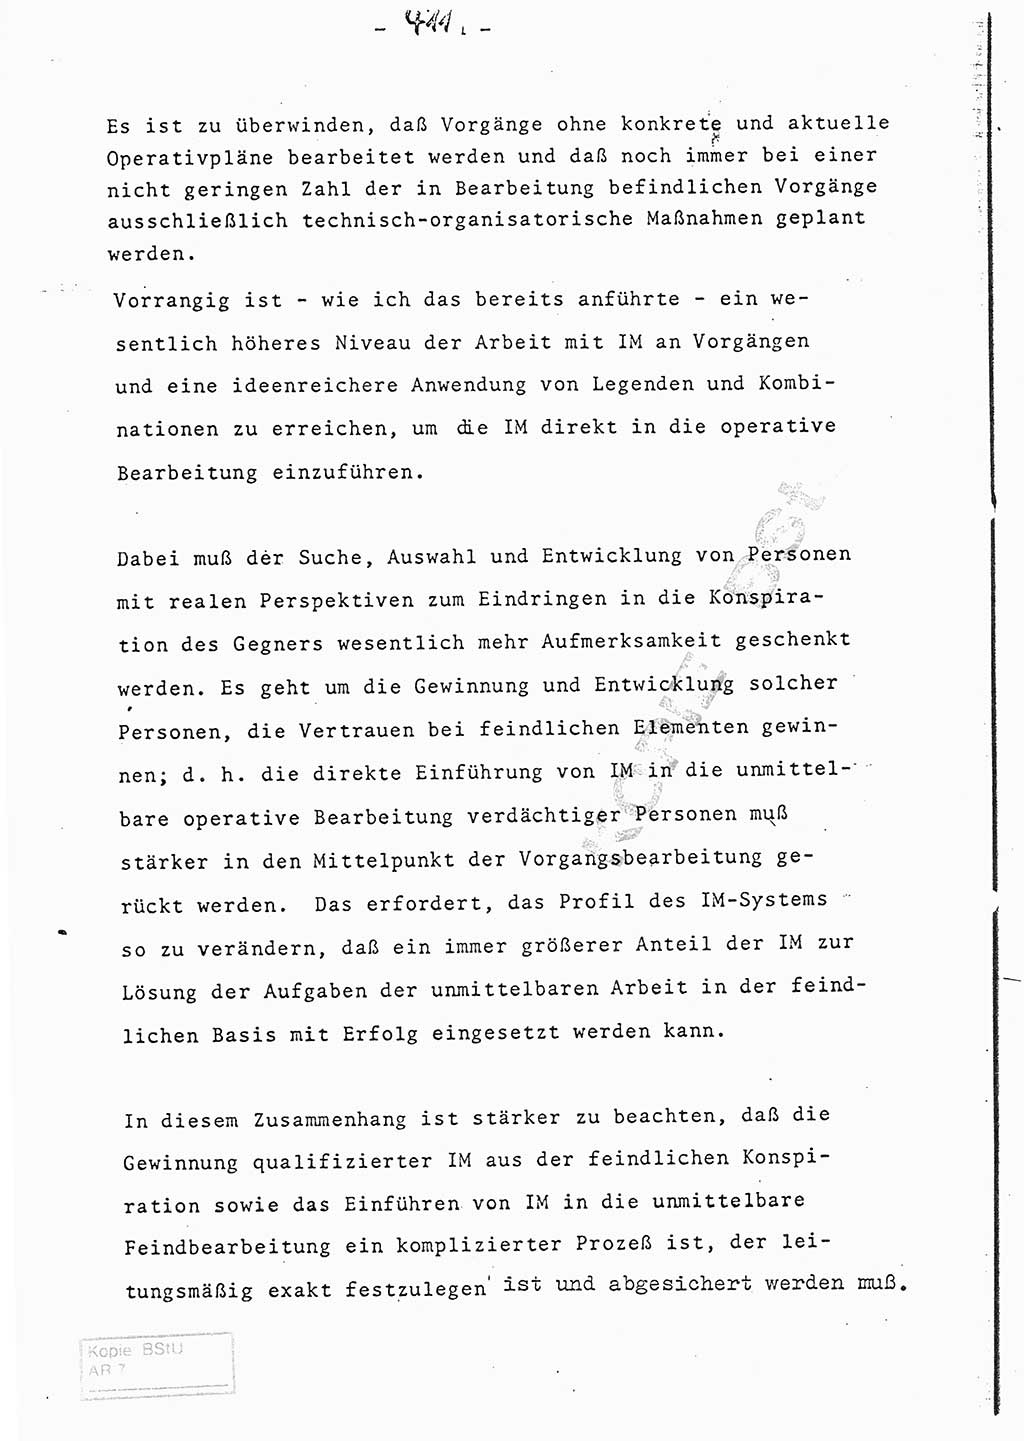 Referat (Entwurf) des Genossen Minister (Generaloberst Erich Mielke) auf der Dienstkonferenz 1972, Ministerium für Staatssicherheit (MfS) [Deutsche Demokratische Republik (DDR)], Der Minister, Geheime Verschlußsache (GVS) 008-150/72, Berlin 25.2.1972, Seite 411 (Ref. Entw. DK MfS DDR Min. GVS 008-150/72 1972, S. 411)